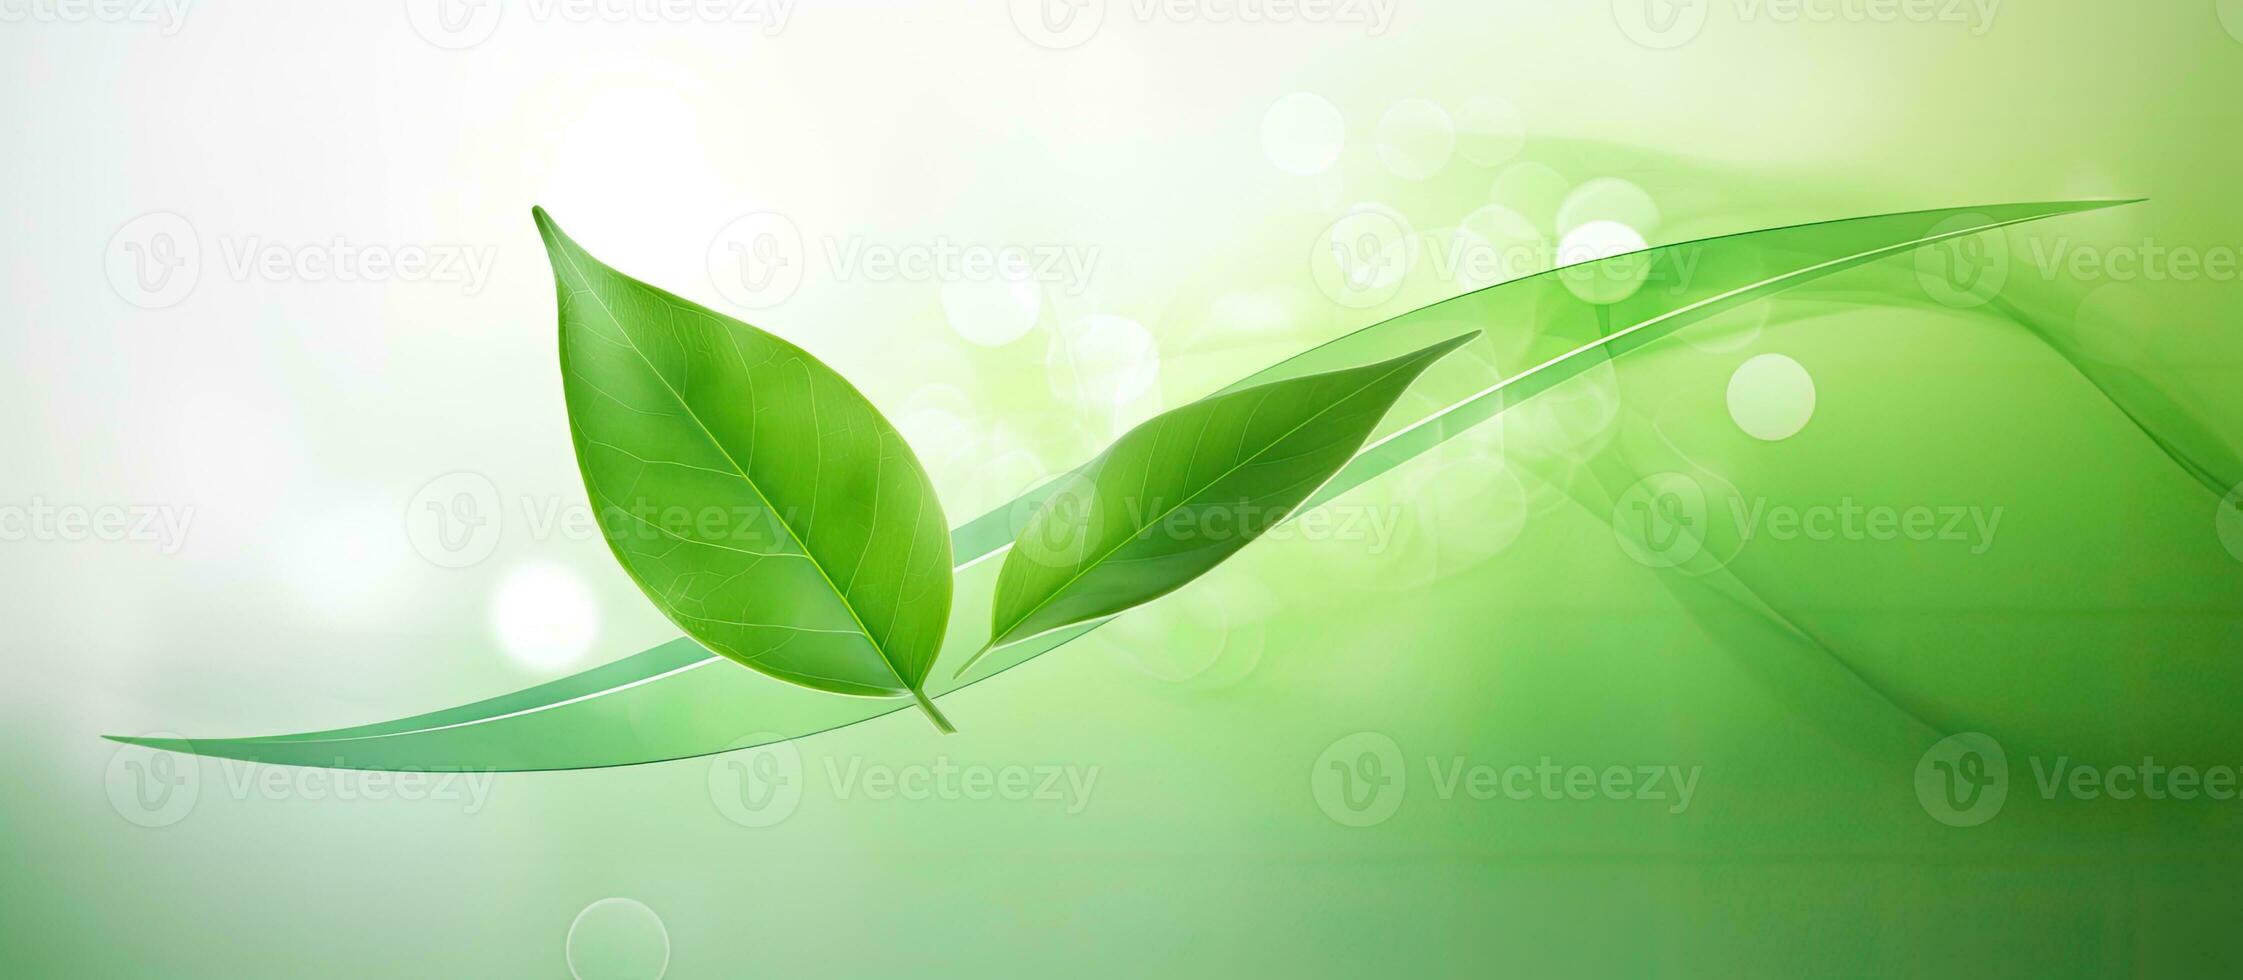 naturlig begrepp, miljö, och organisk Produkter är avbildad i en grön abstrakt pil design. foto